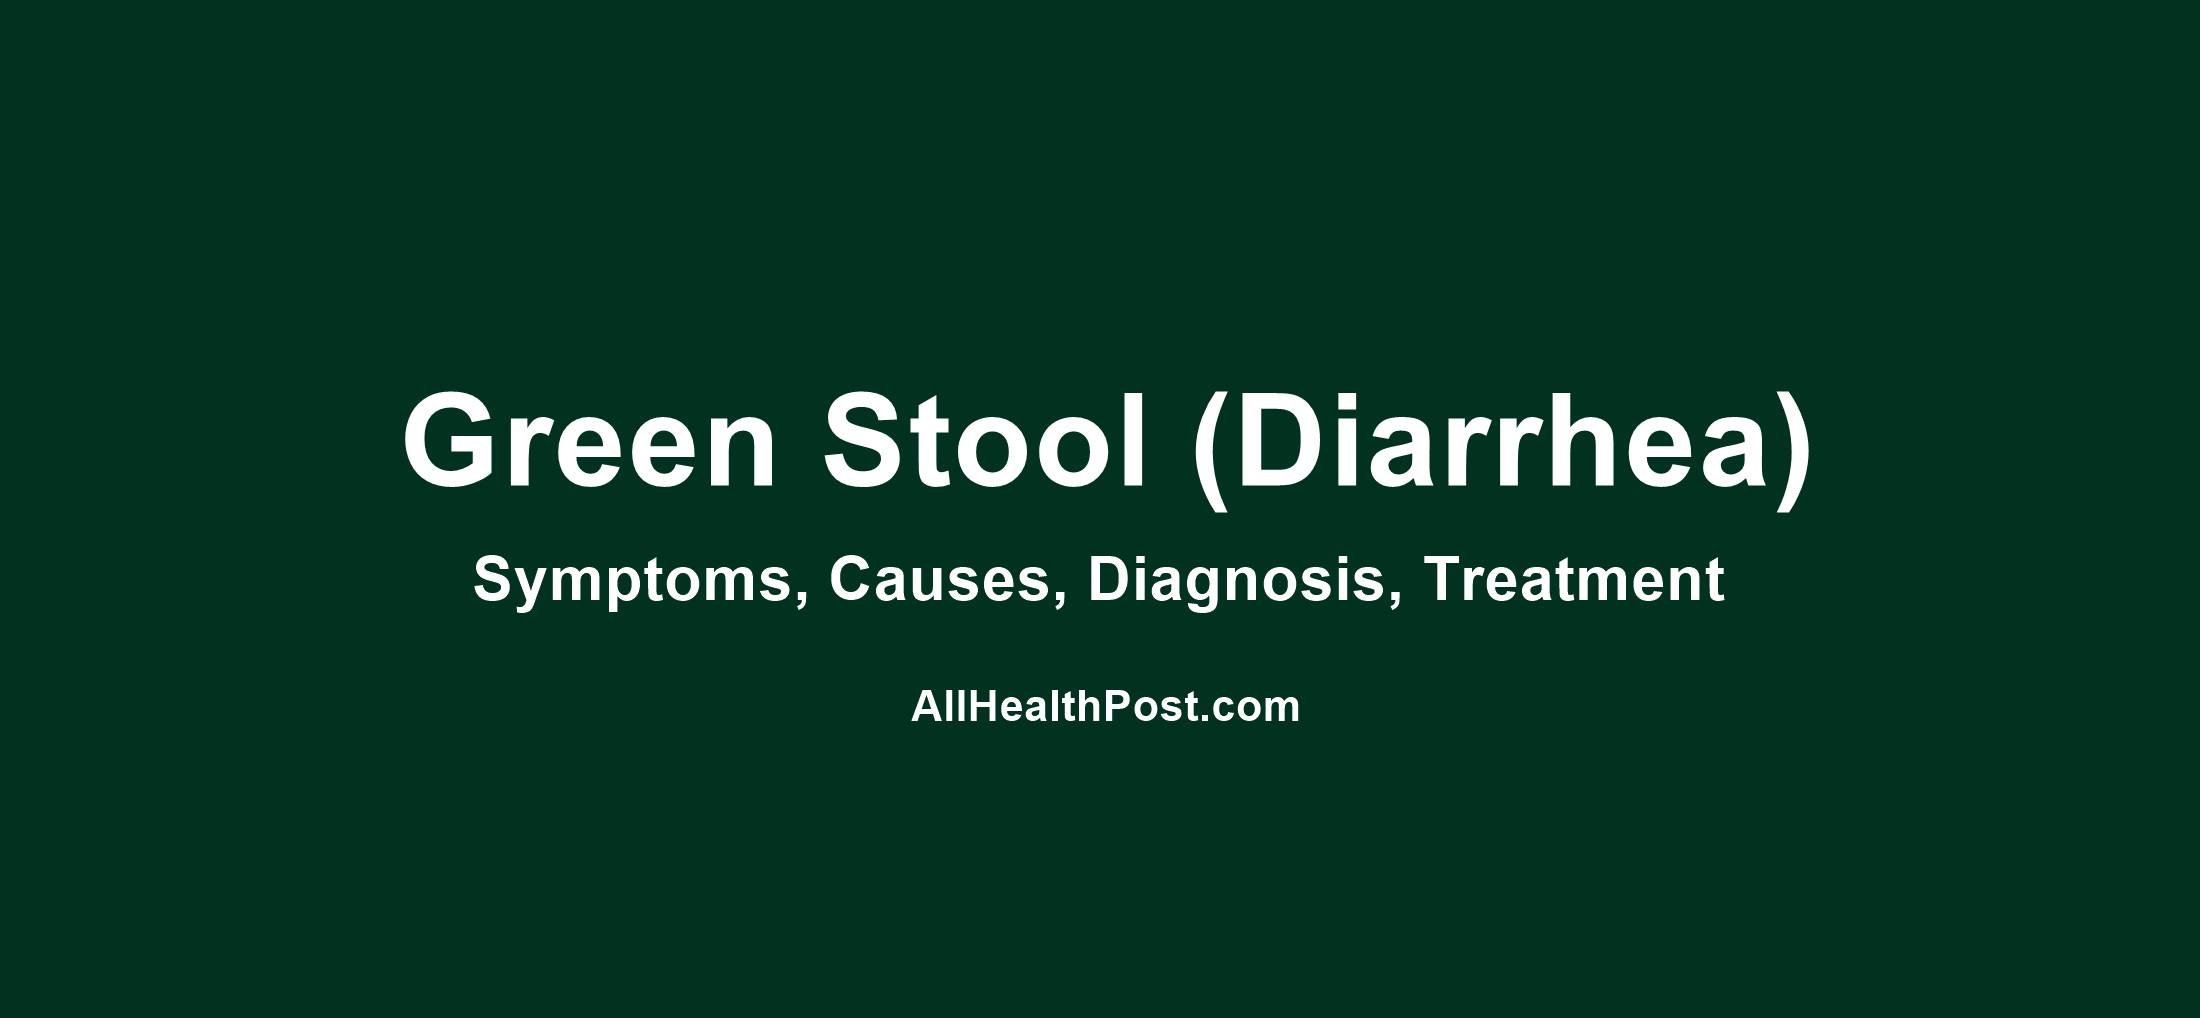 Green Stool (Diarrhea): Symptoms, Causes, Dagnosis, Treatment